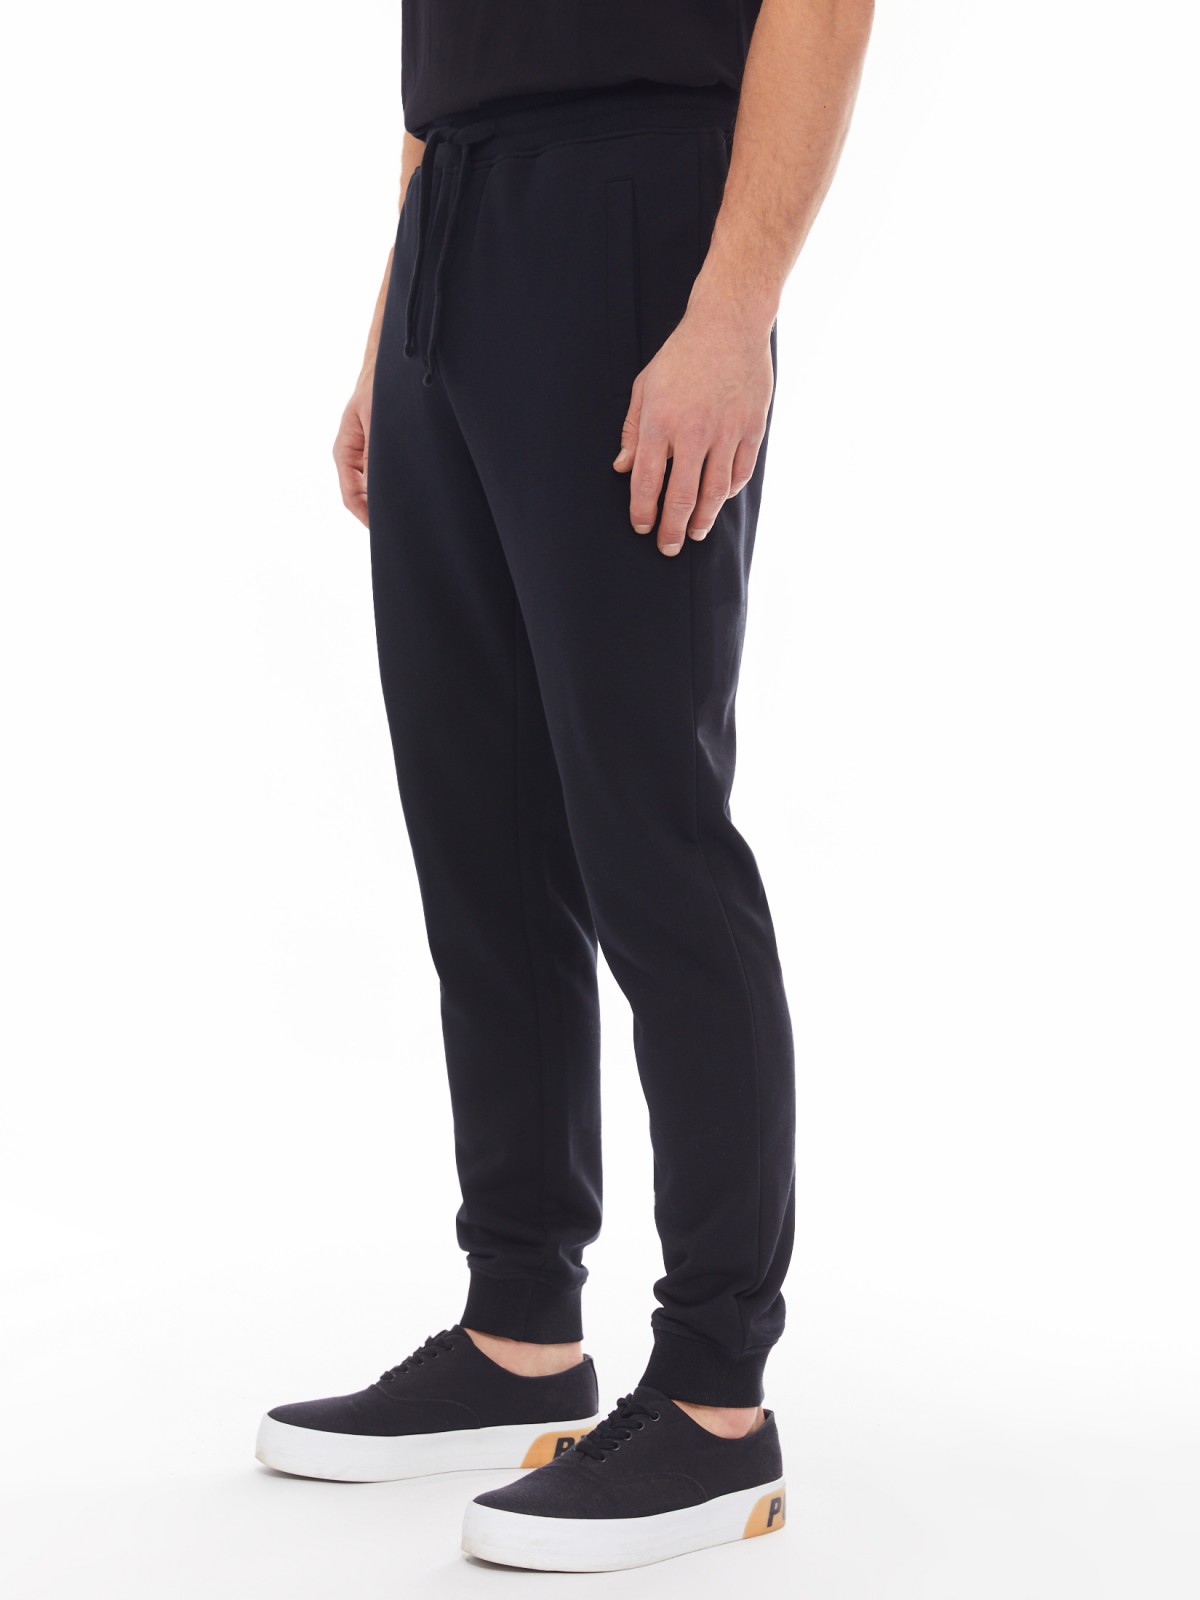 Трикотажные брюки-джоггеры в спортивном стиле zolla 014137675022, цвет черный, размер S - фото 2